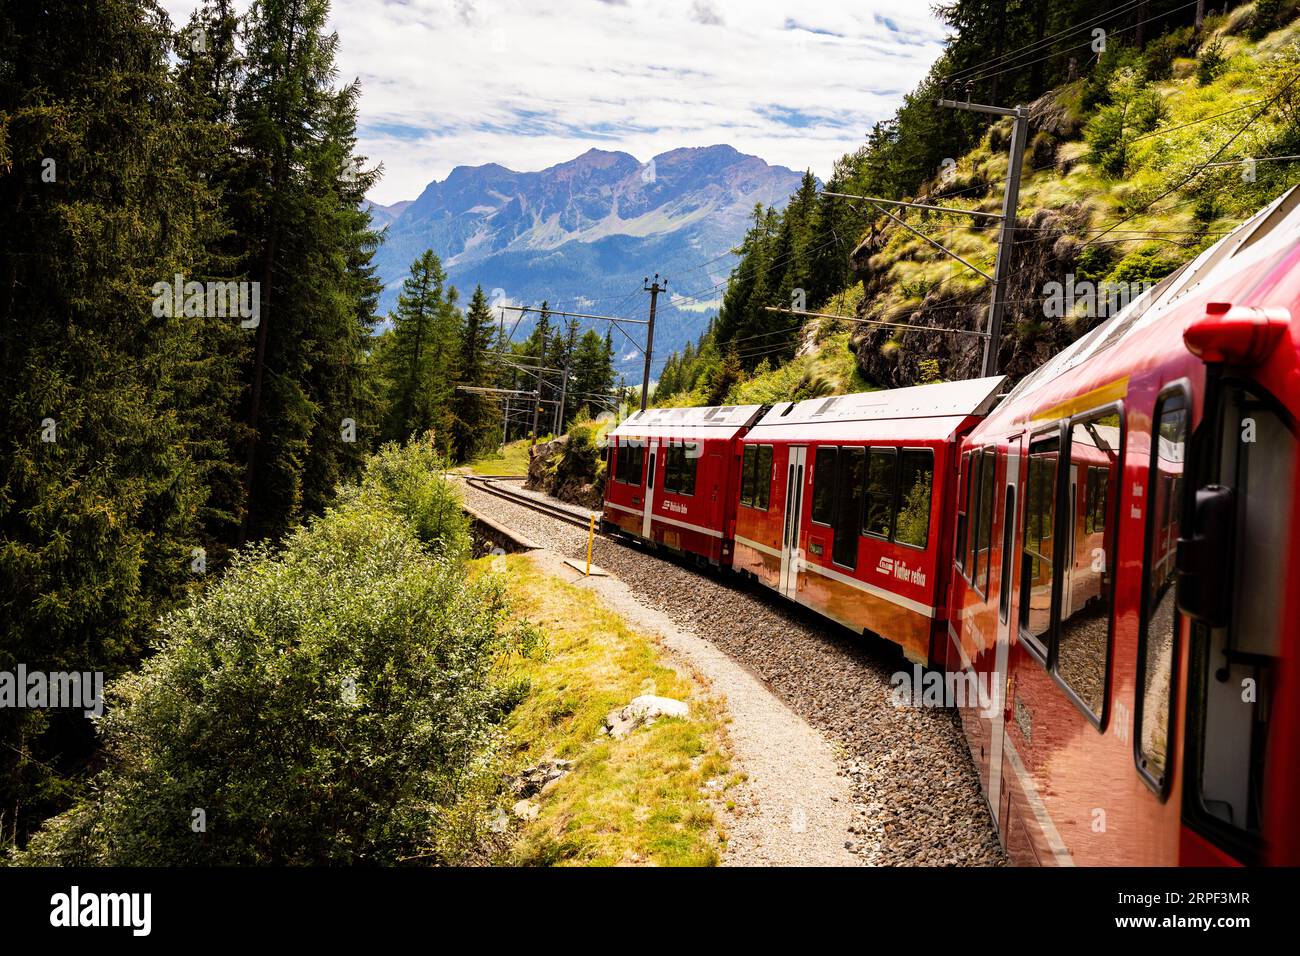 Der Red Bernina Express-Zug schlängelt sich durch dichtes grünes Laub und schneebedeckte Berge in der Ferne zum Gipfel der Schweizer Alpen. Stockfoto